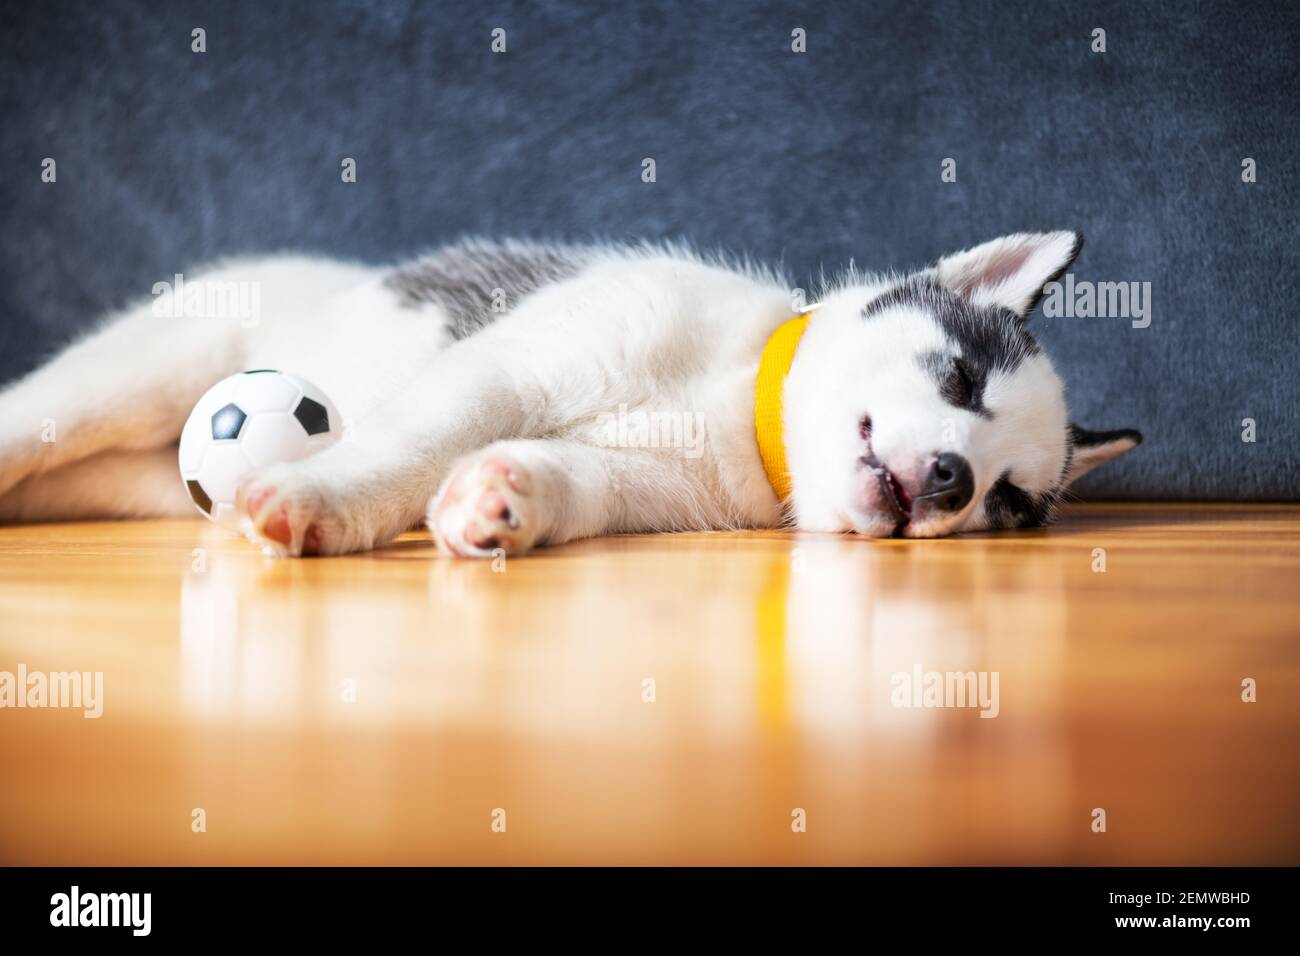 Ein kleiner weißer Hund Welpe Rasse sibirischen Husky mit schönen blauen Augen liegt auf Holzboden mit Kugelspielzeug. Hunde und Haustiere Fotografie Stockfoto